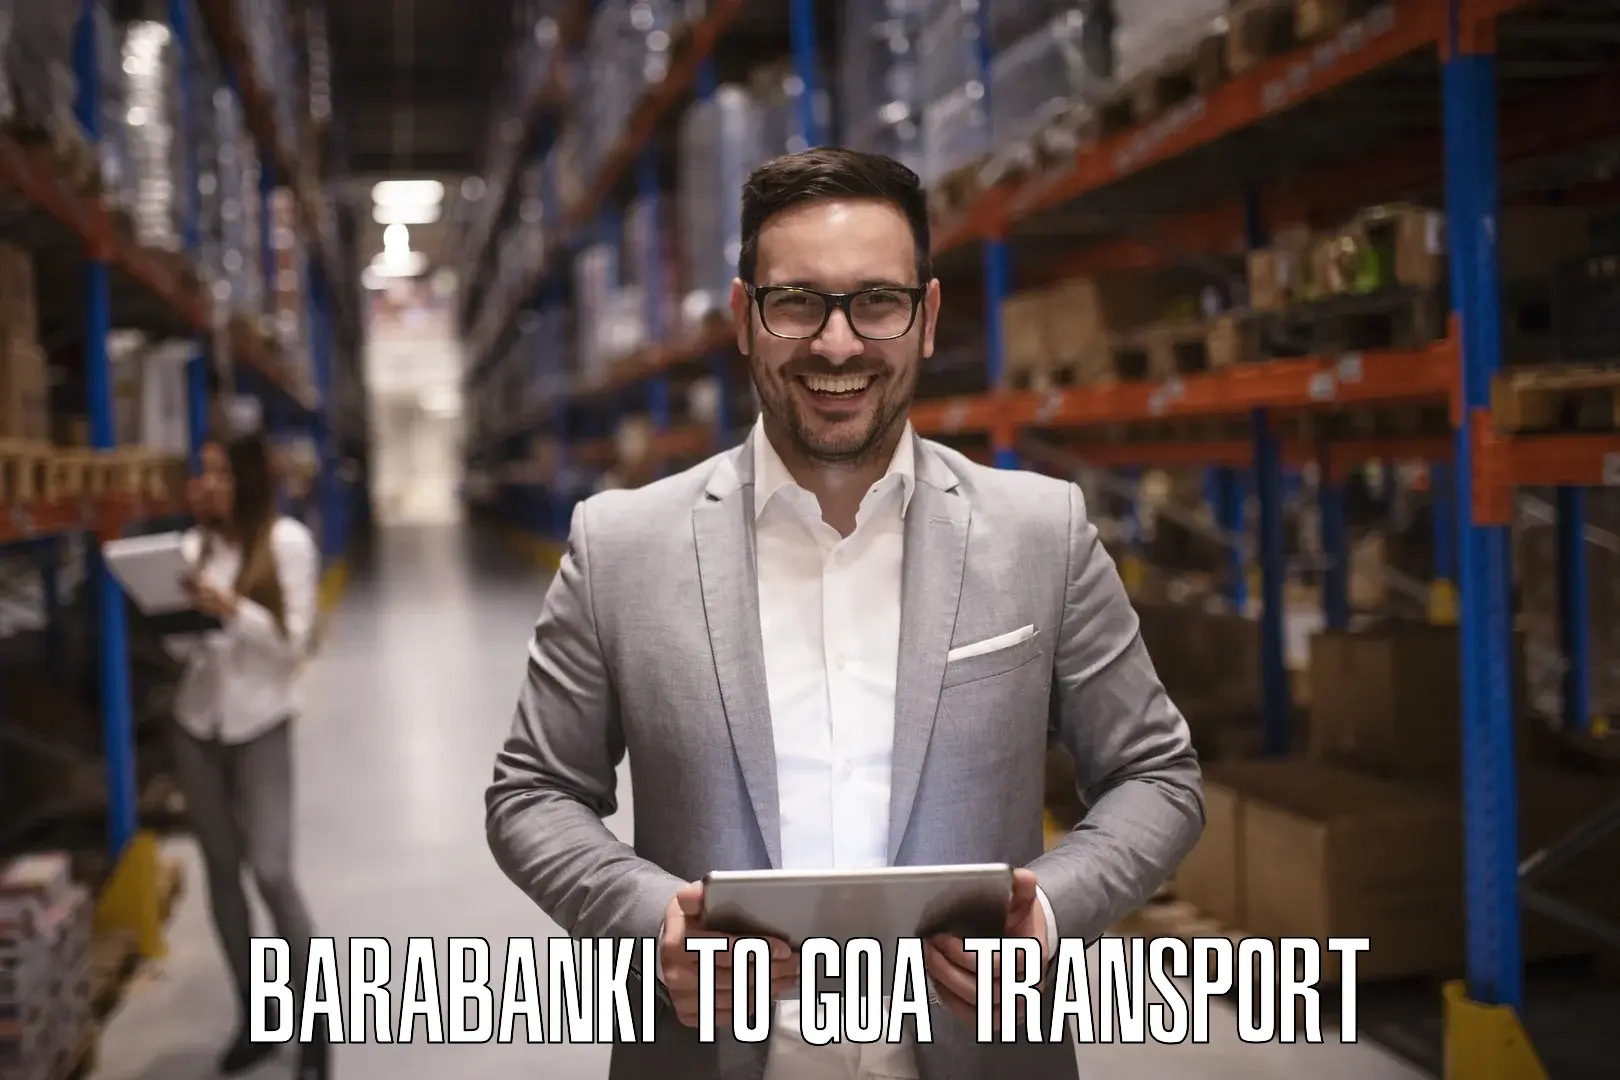 Transportation services Barabanki to Canacona